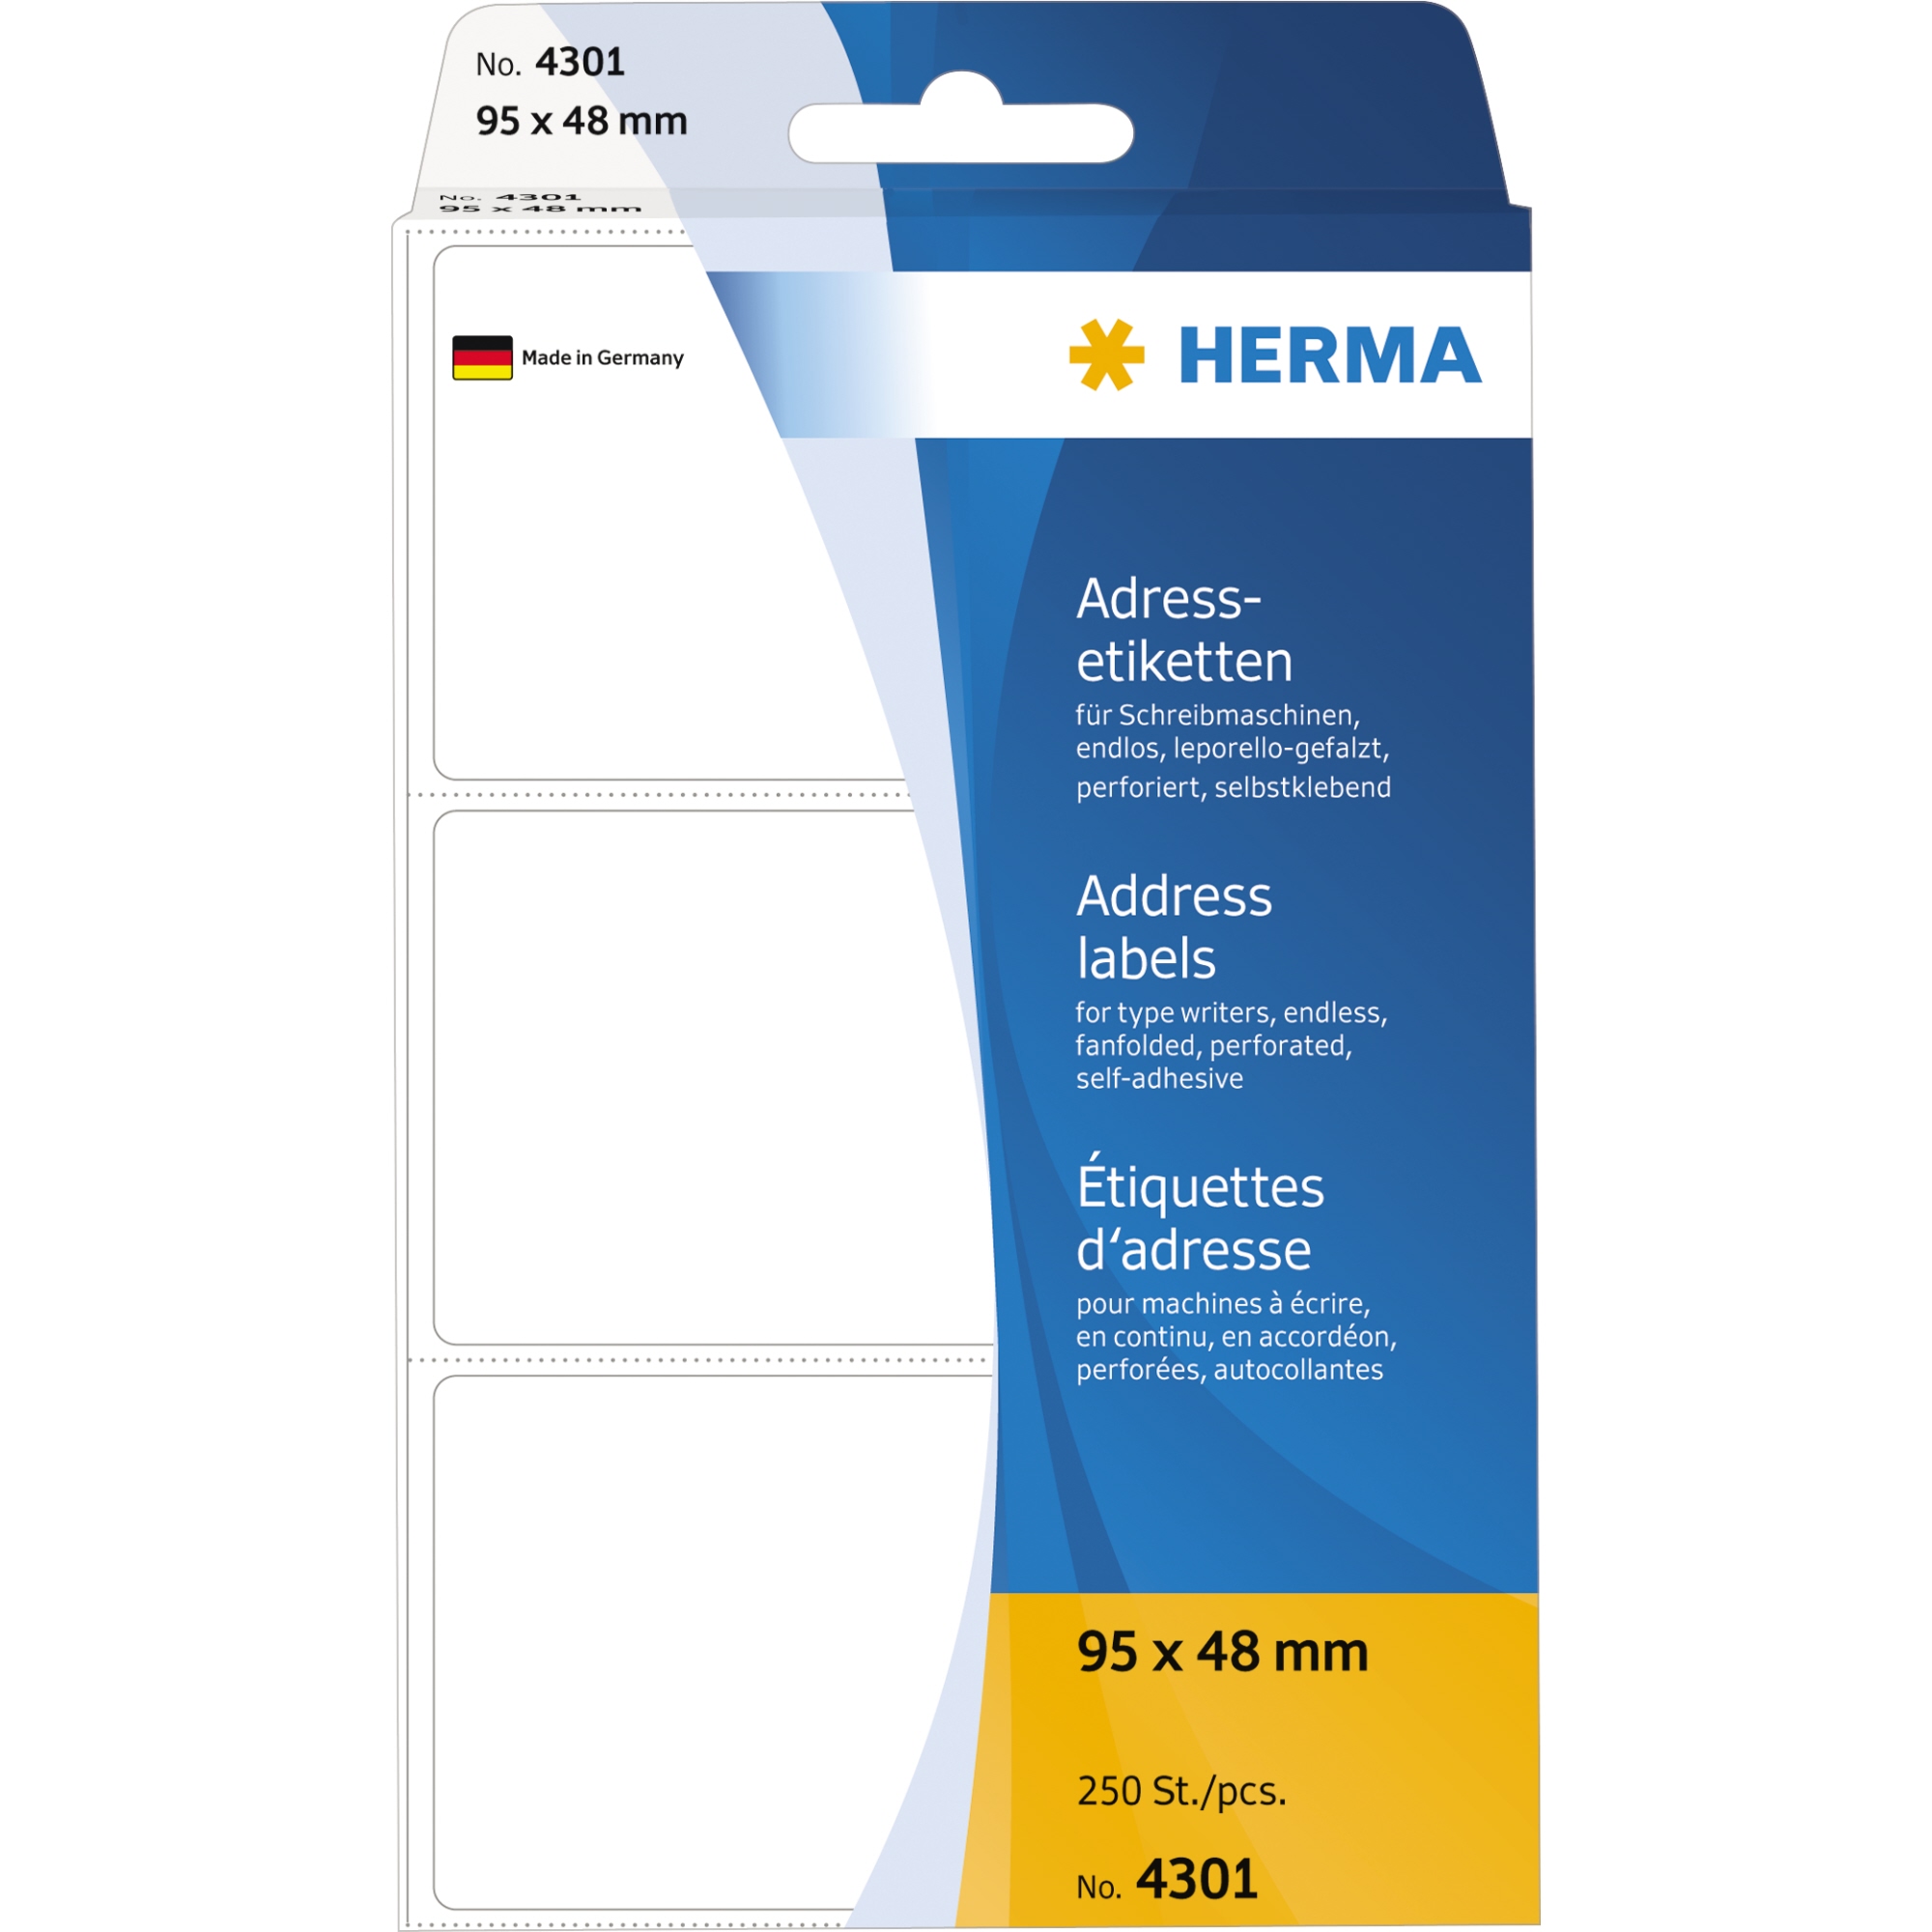 HERMA Adressetikett leporello-gefalzt, weiß, 95 x 48 mm (B x H)